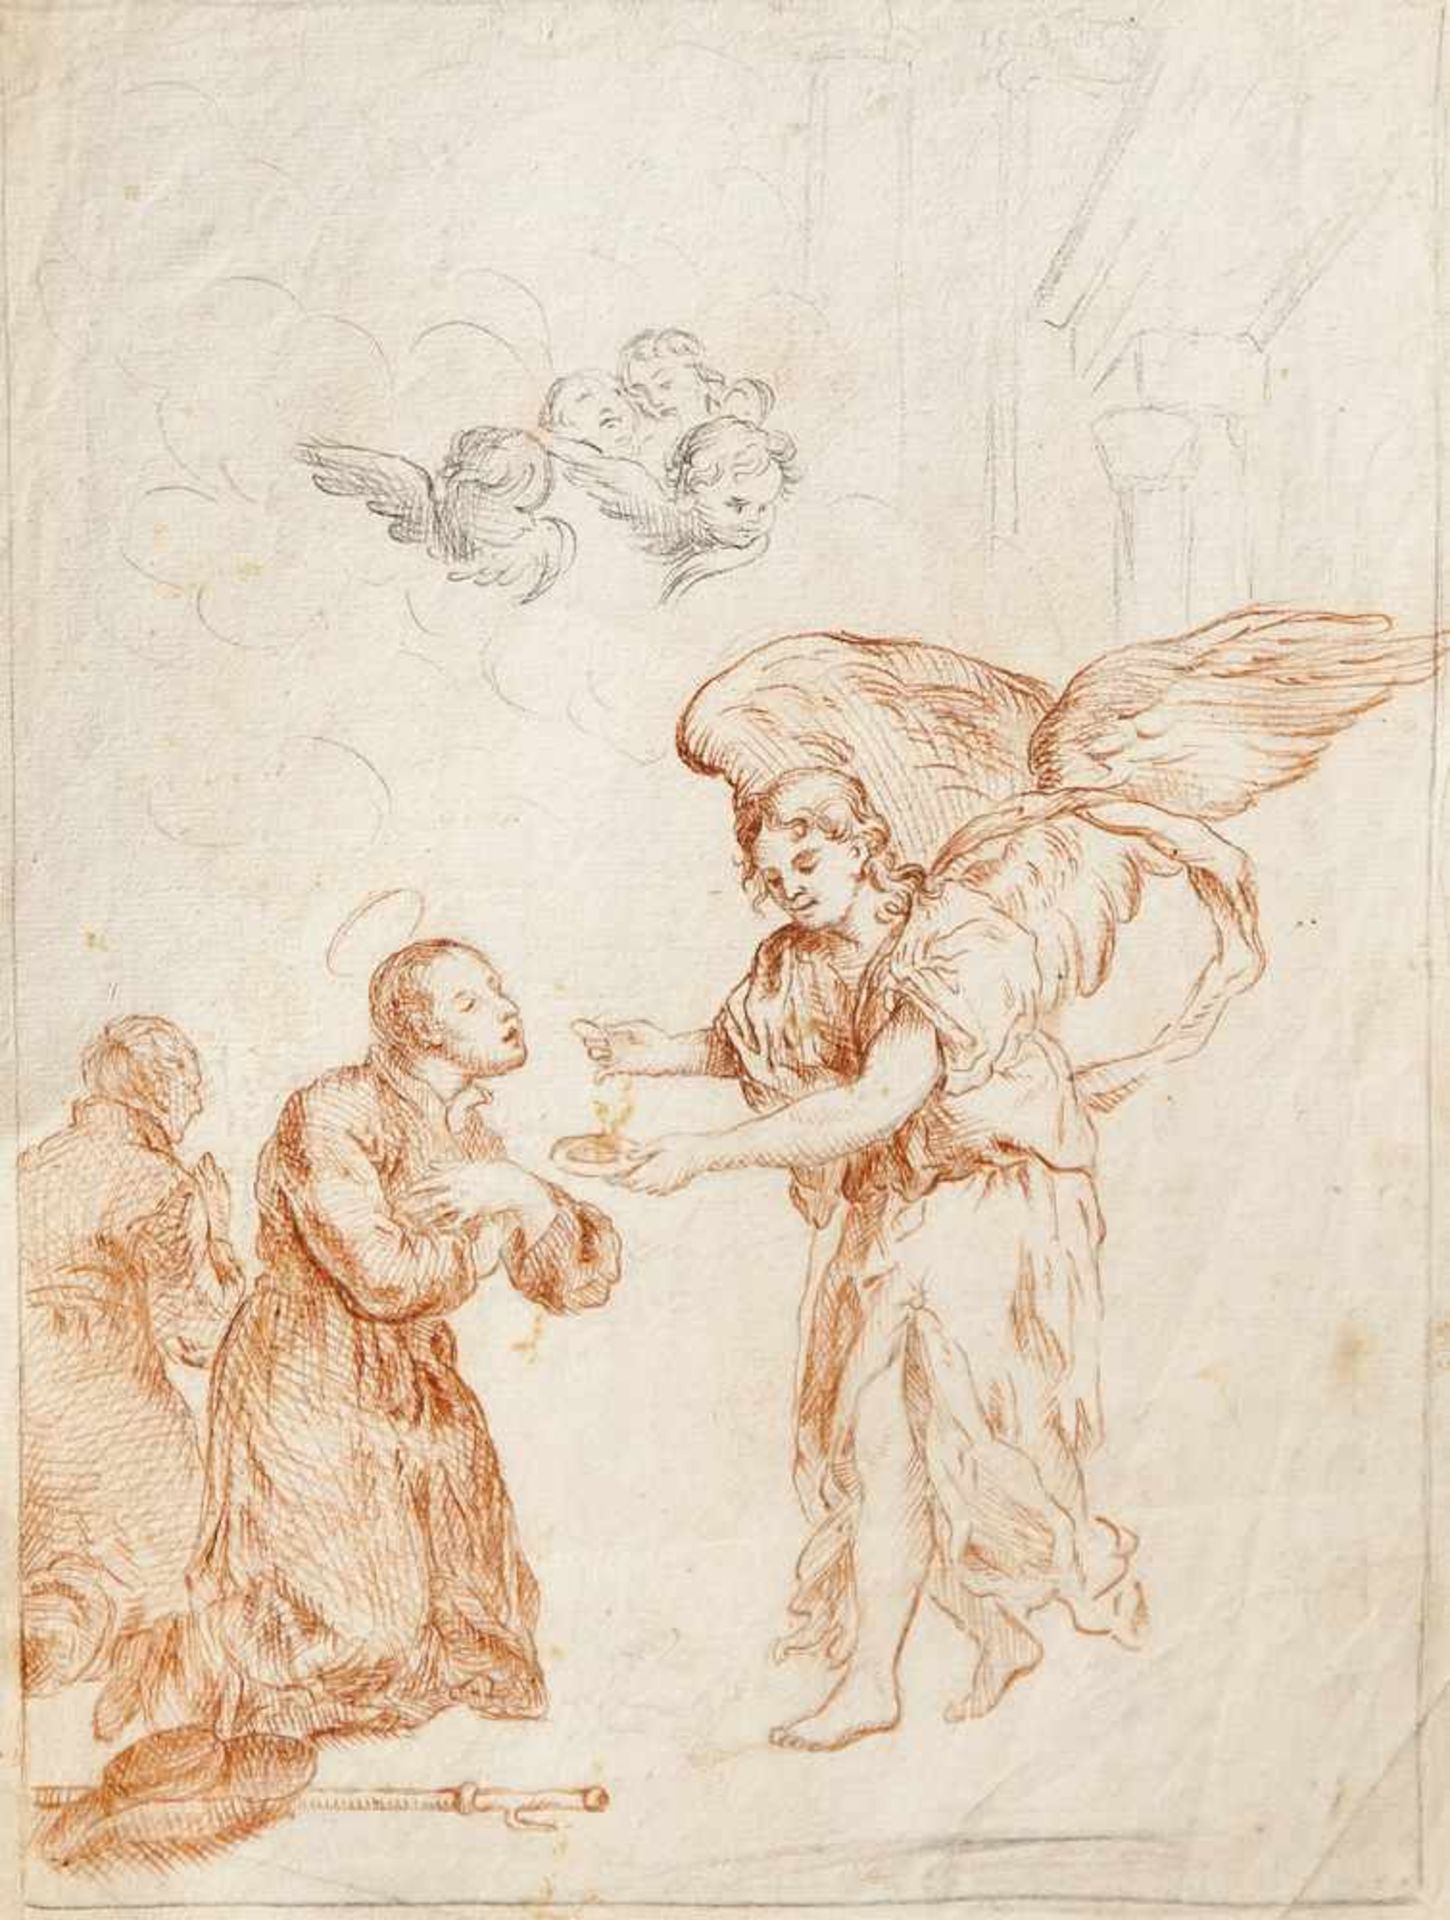 Rötelzeichnung (Skizze), 17. Jahrhundert, Darstellung eines Erzengels (Michael?) mit